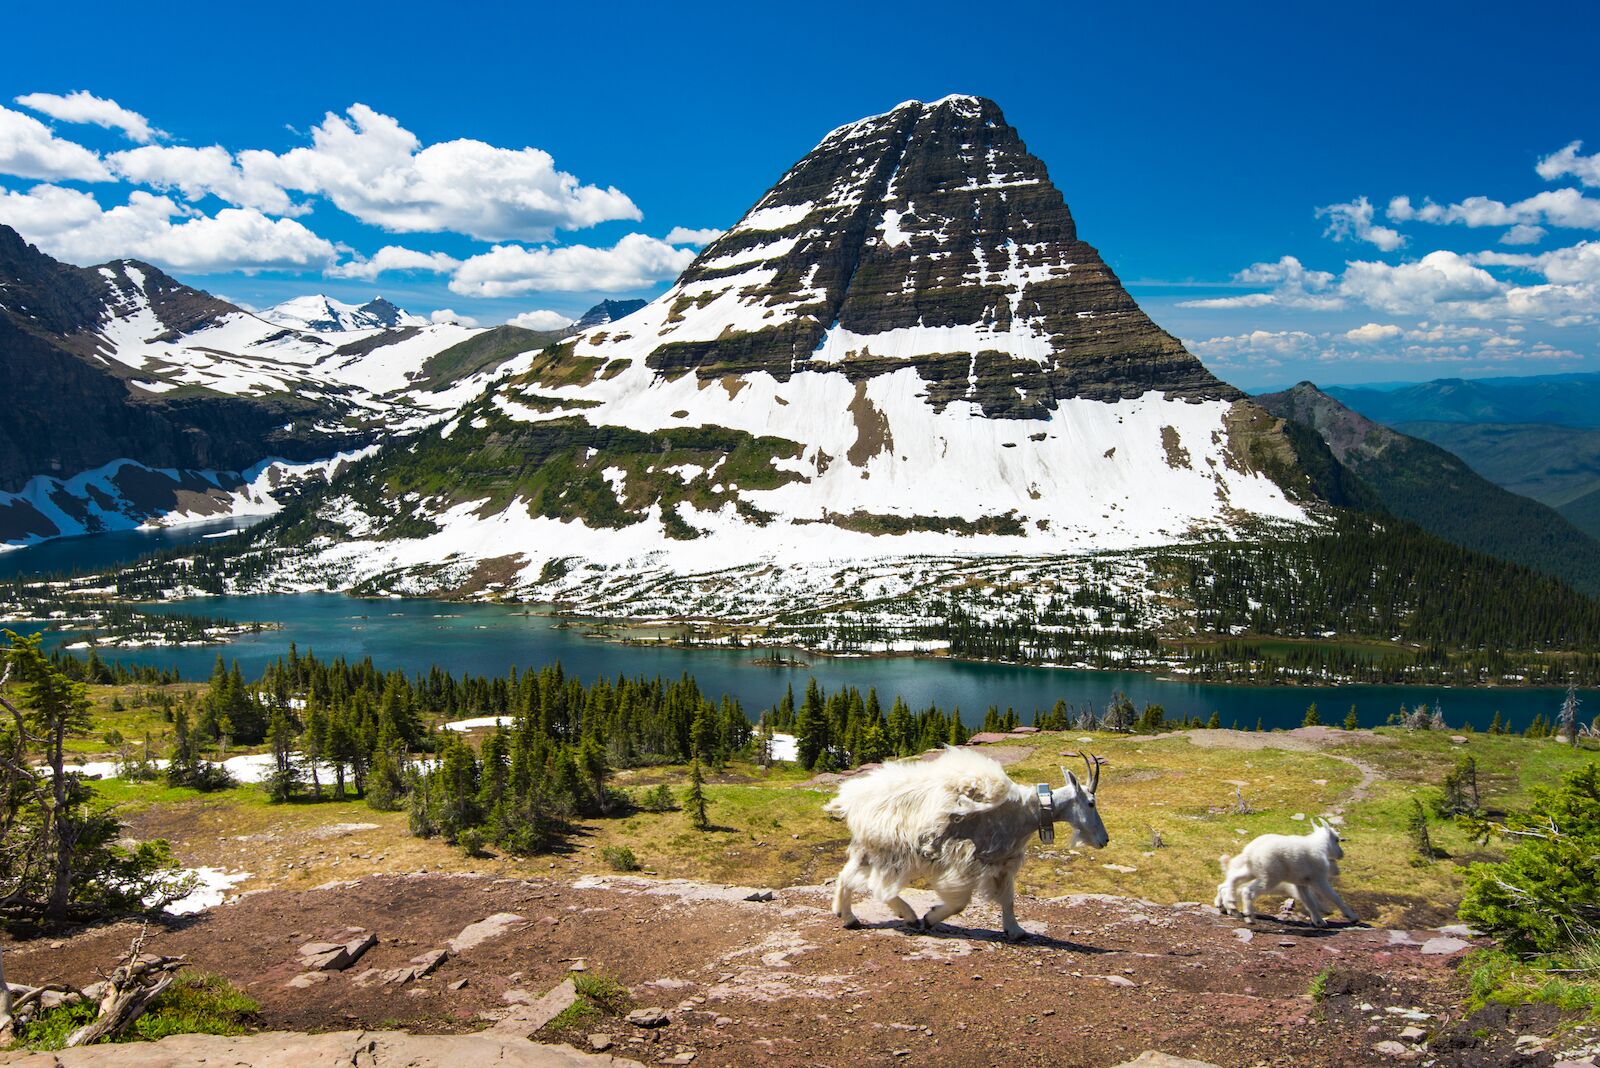 yellowstone vs glacier - glacier mountain goats